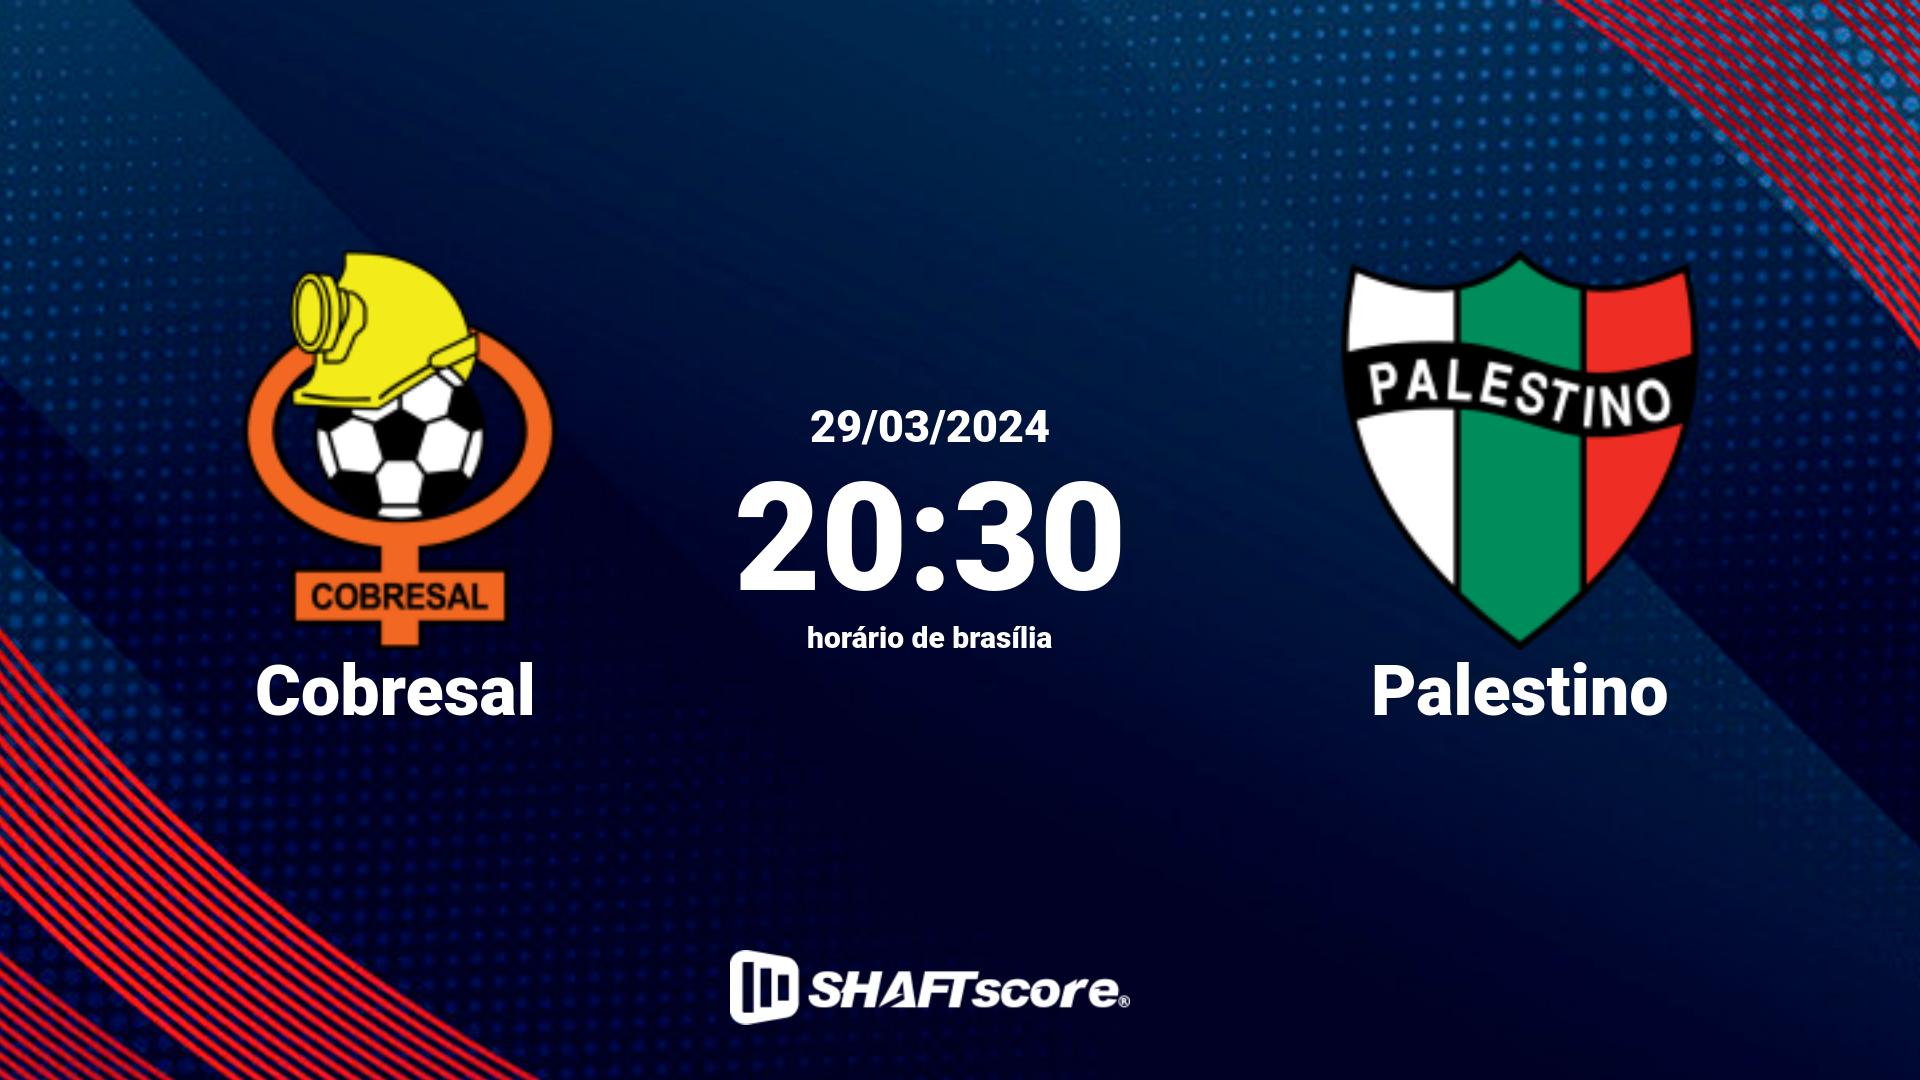 Estatísticas do jogo Cobresal vs Palestino 29.03 20:30